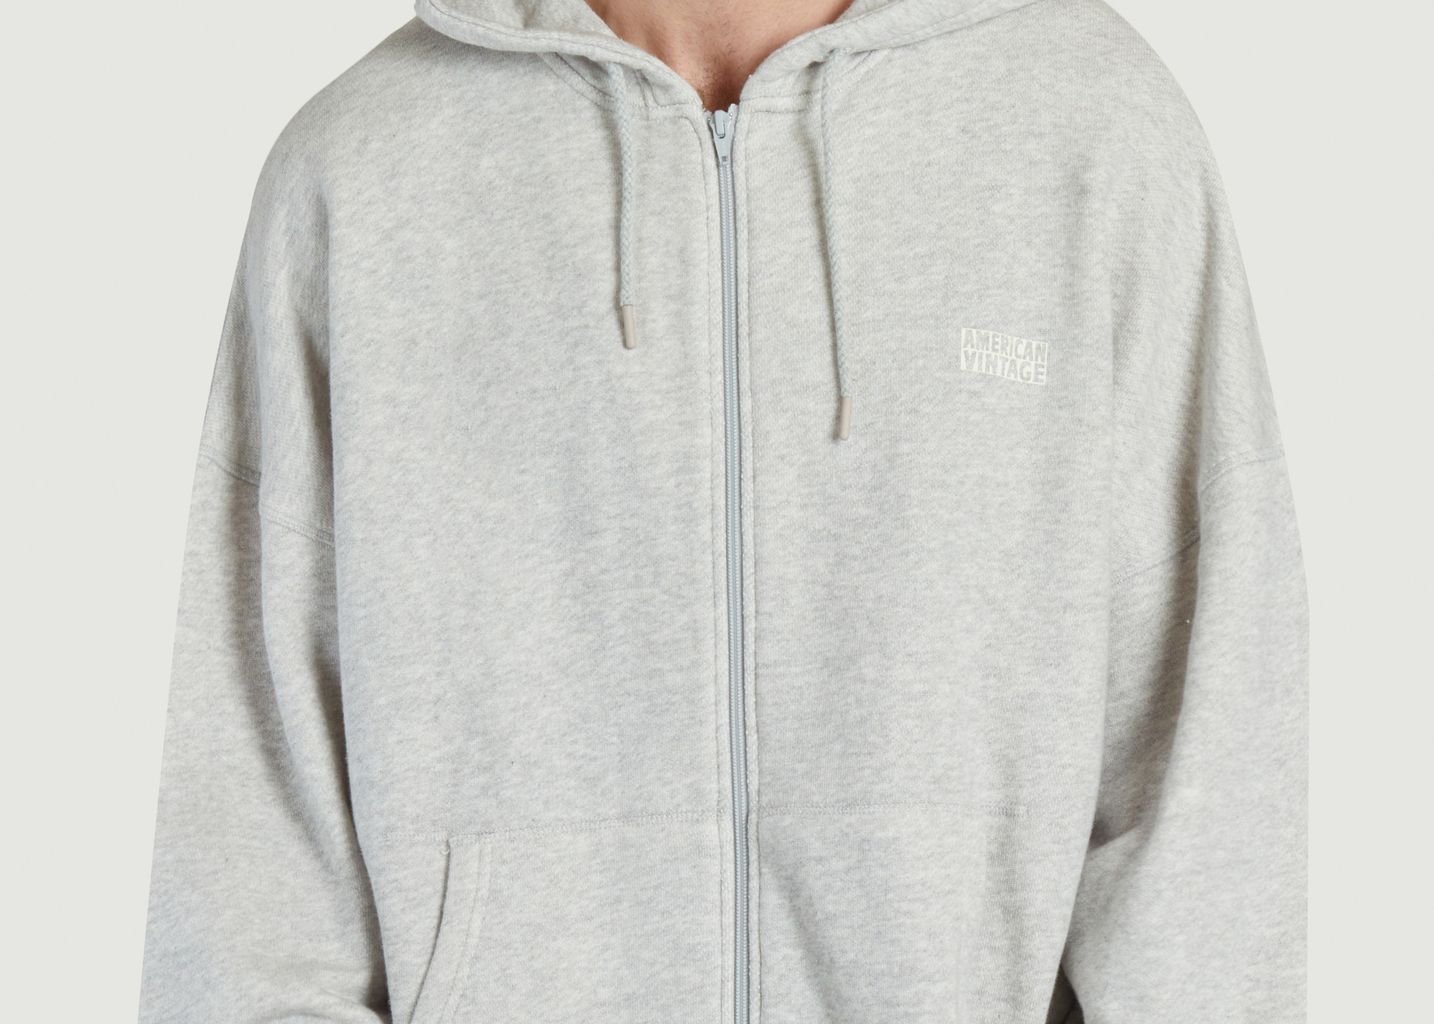 Kodytown full-cut hoodie with zip and logo - American Vintage